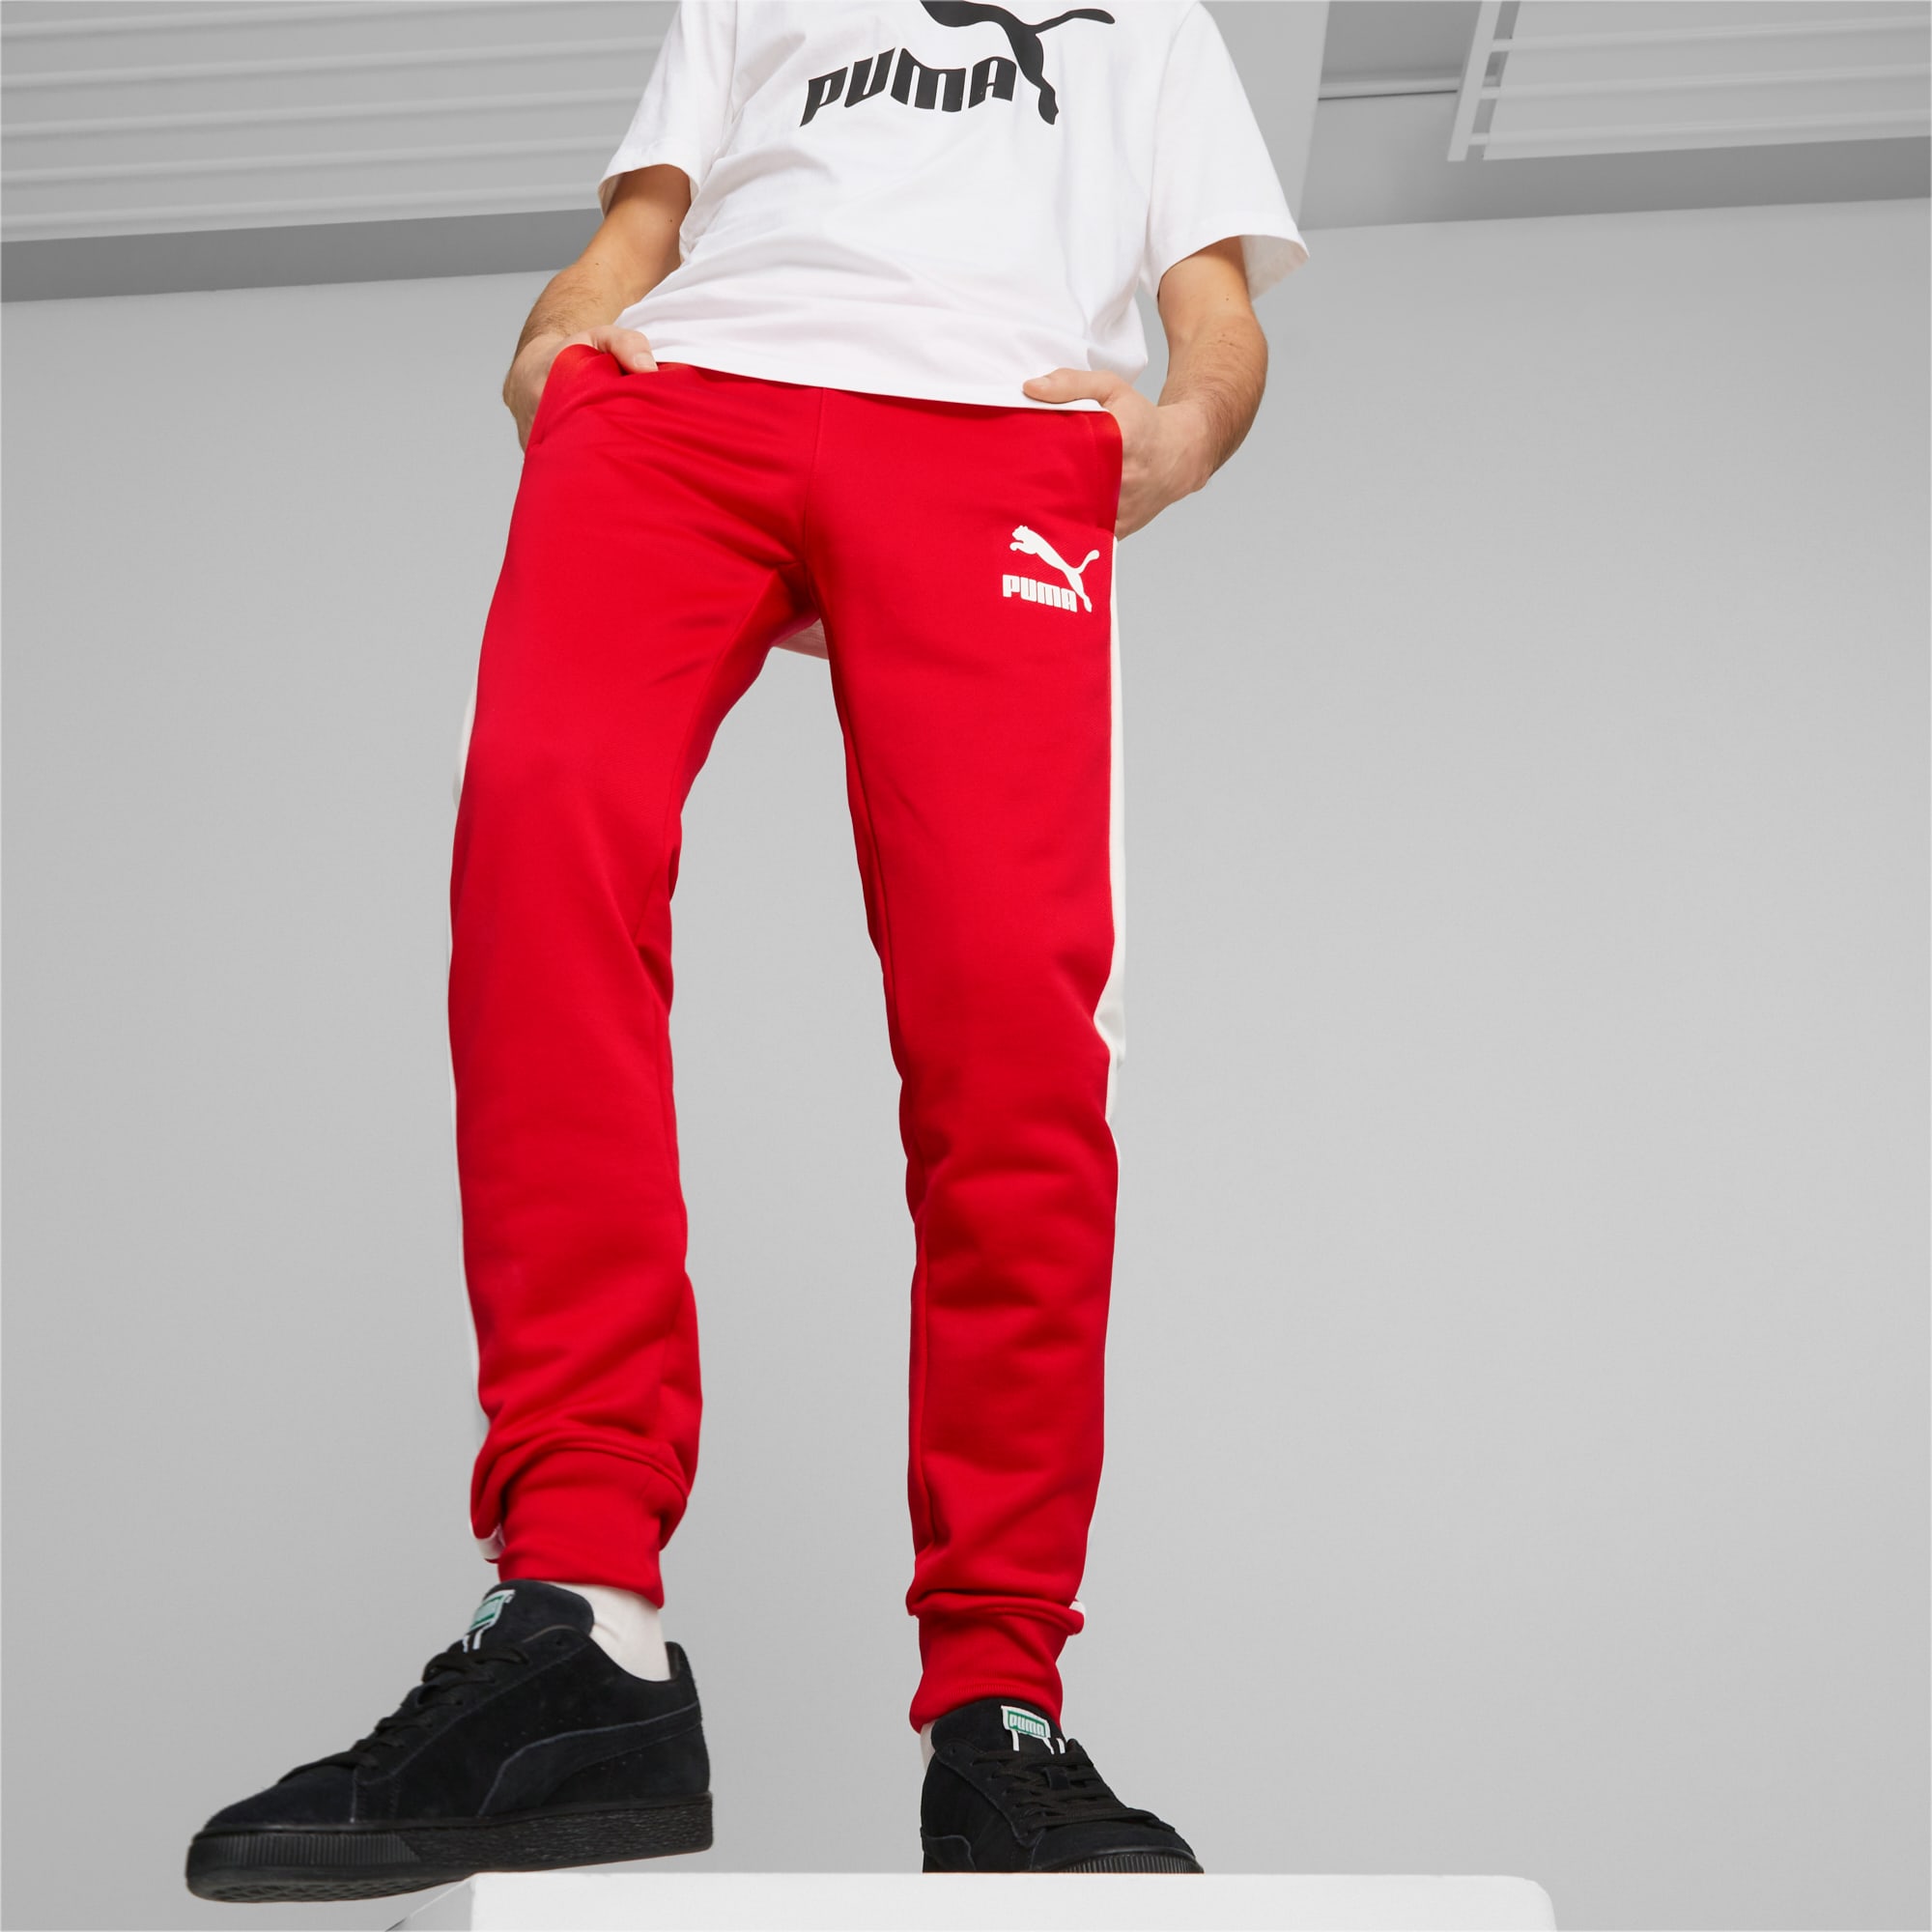 PUMA Iconic T7 Herren Trainingshose, Rot, Größe: 4XL, Kleidung